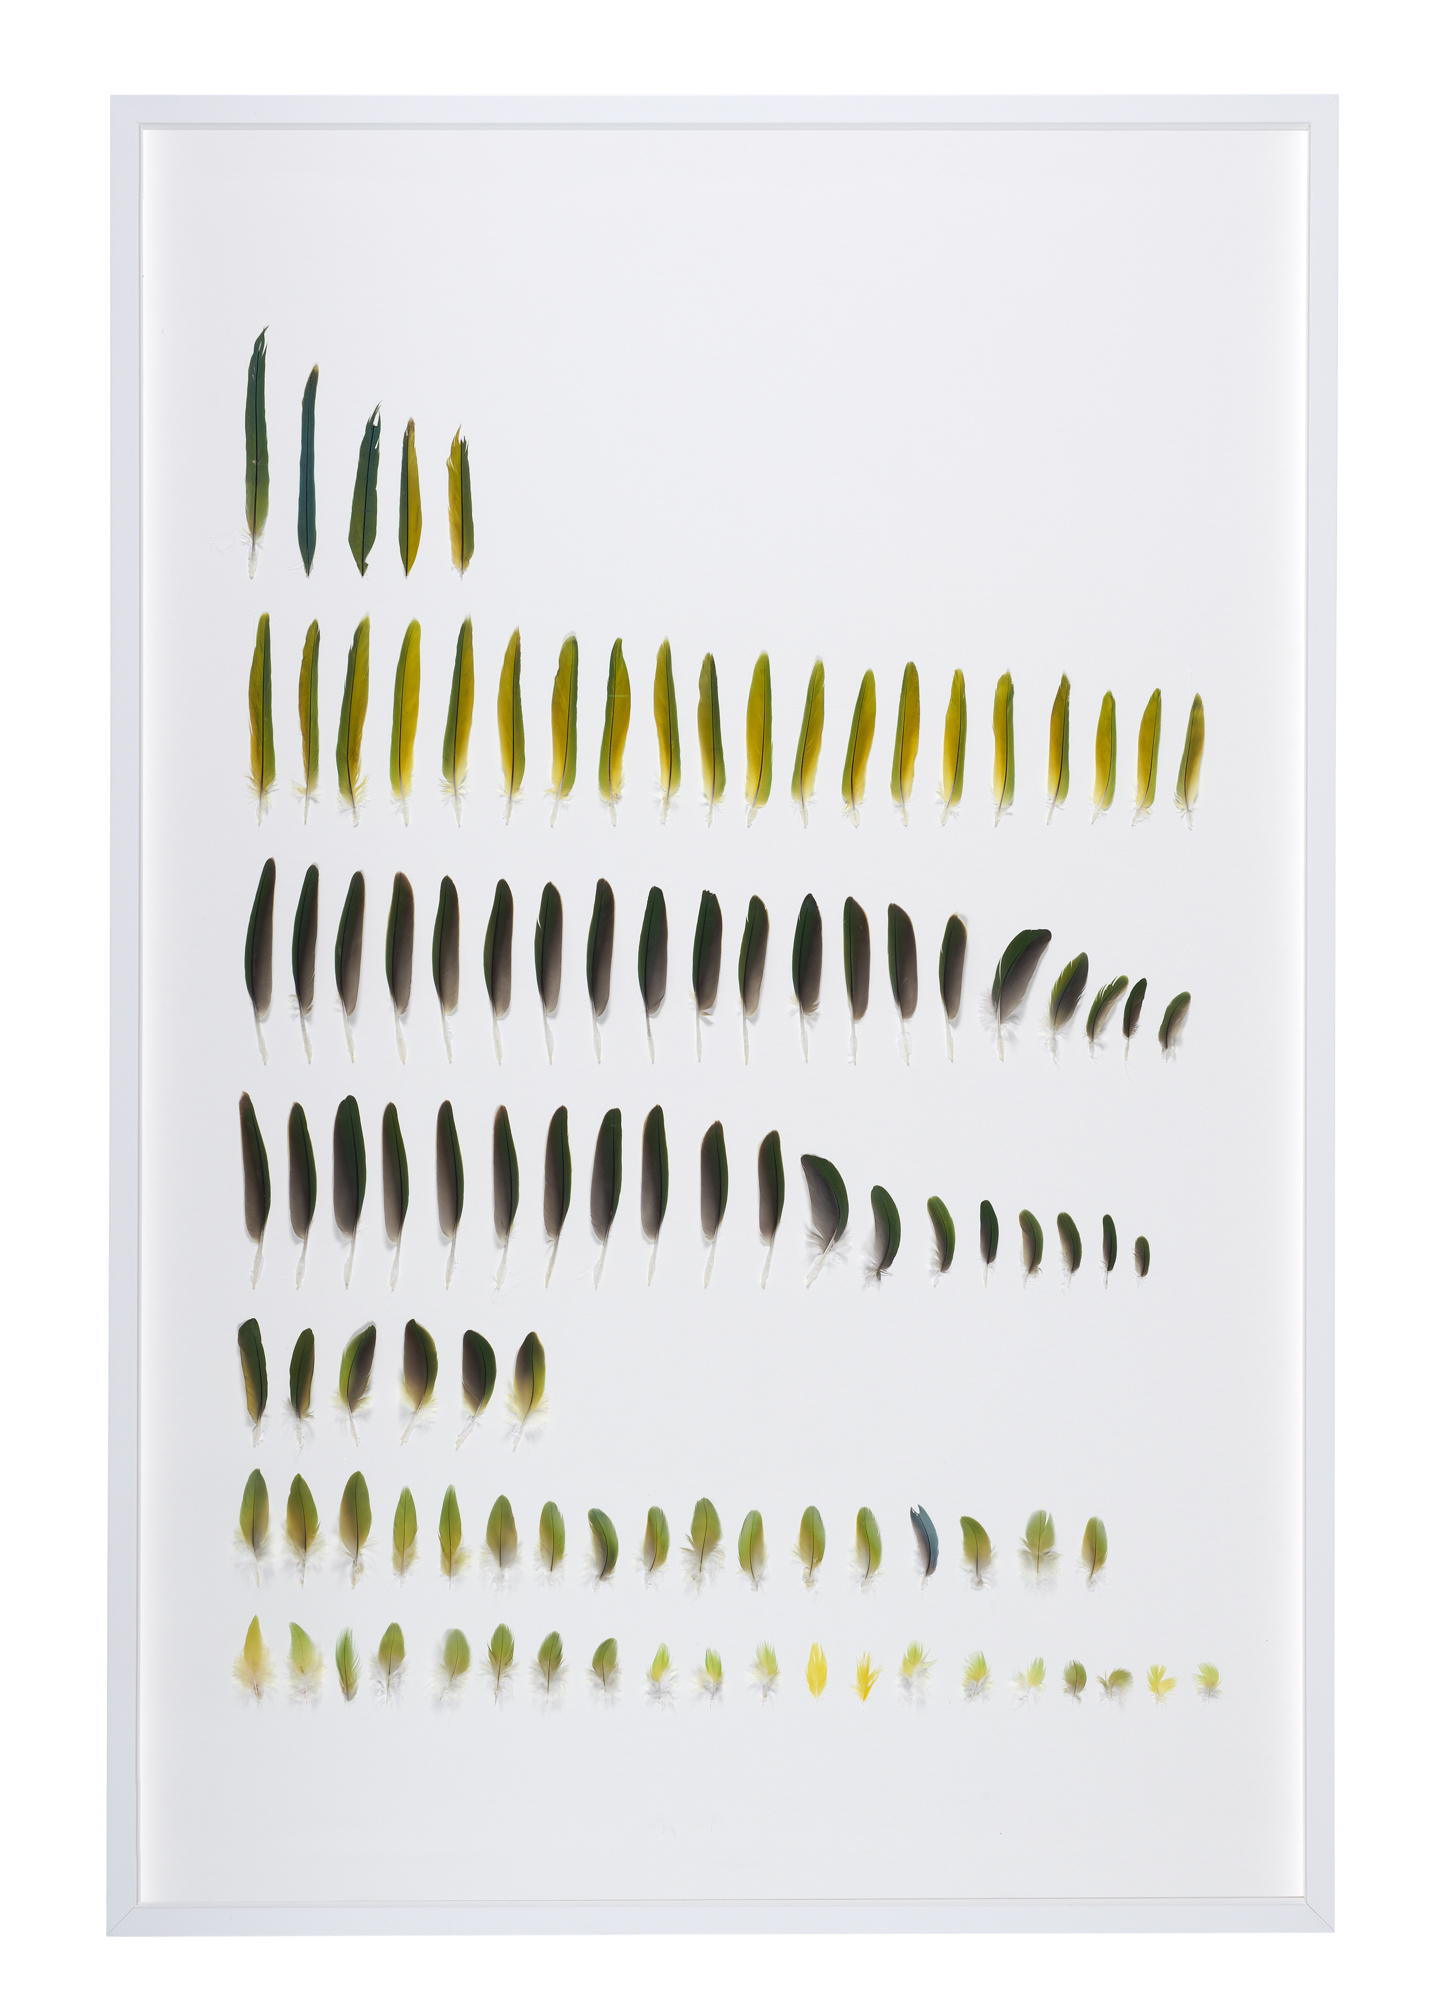 Etude déraisonnée, plumes de perruches, 2021, 107 parakeets feathers in 80 x 120 cm (framed), Unique, Collection Cnap